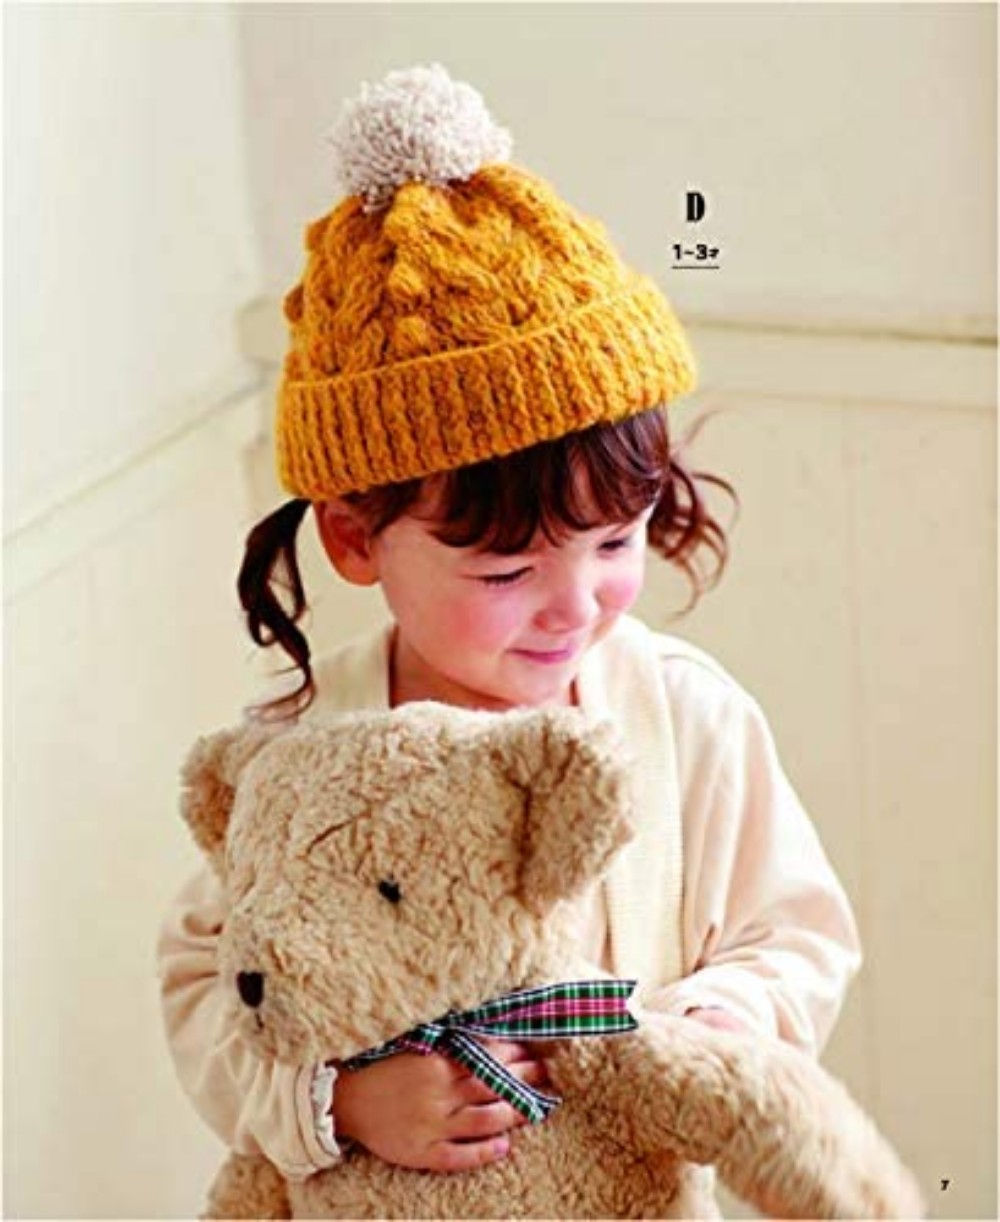 Fun crochet needle knit cute children hat A-Z